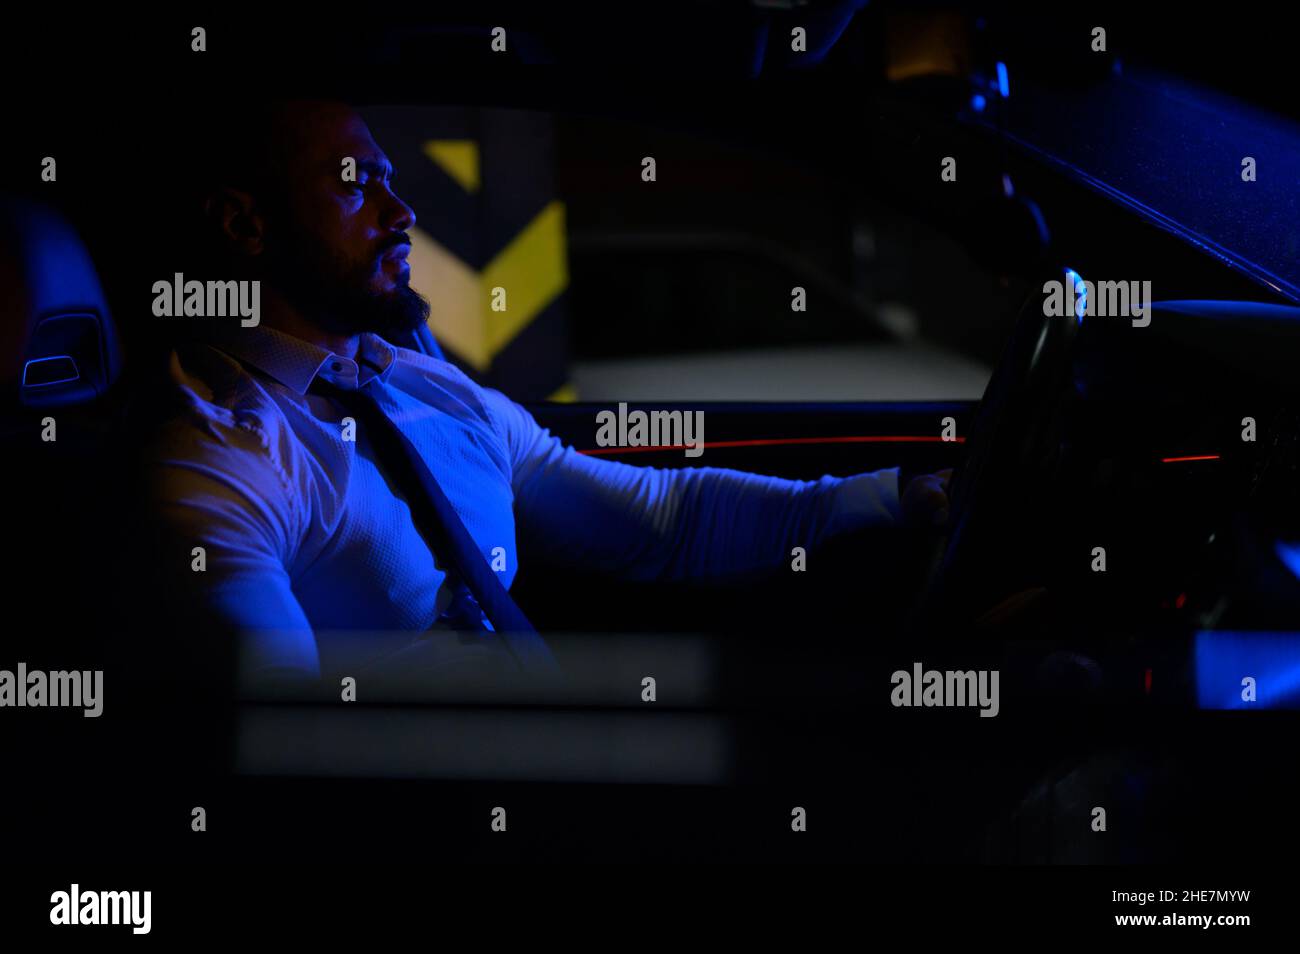 Niedlicher bärtiger, starker junger Mann in weißem Hemd mit Krawatte sitzt in einem luxuriösen Sport-Muskelwagen, der mit blauem Licht in einer Tiefgarage beleuchtet ist Stockfoto